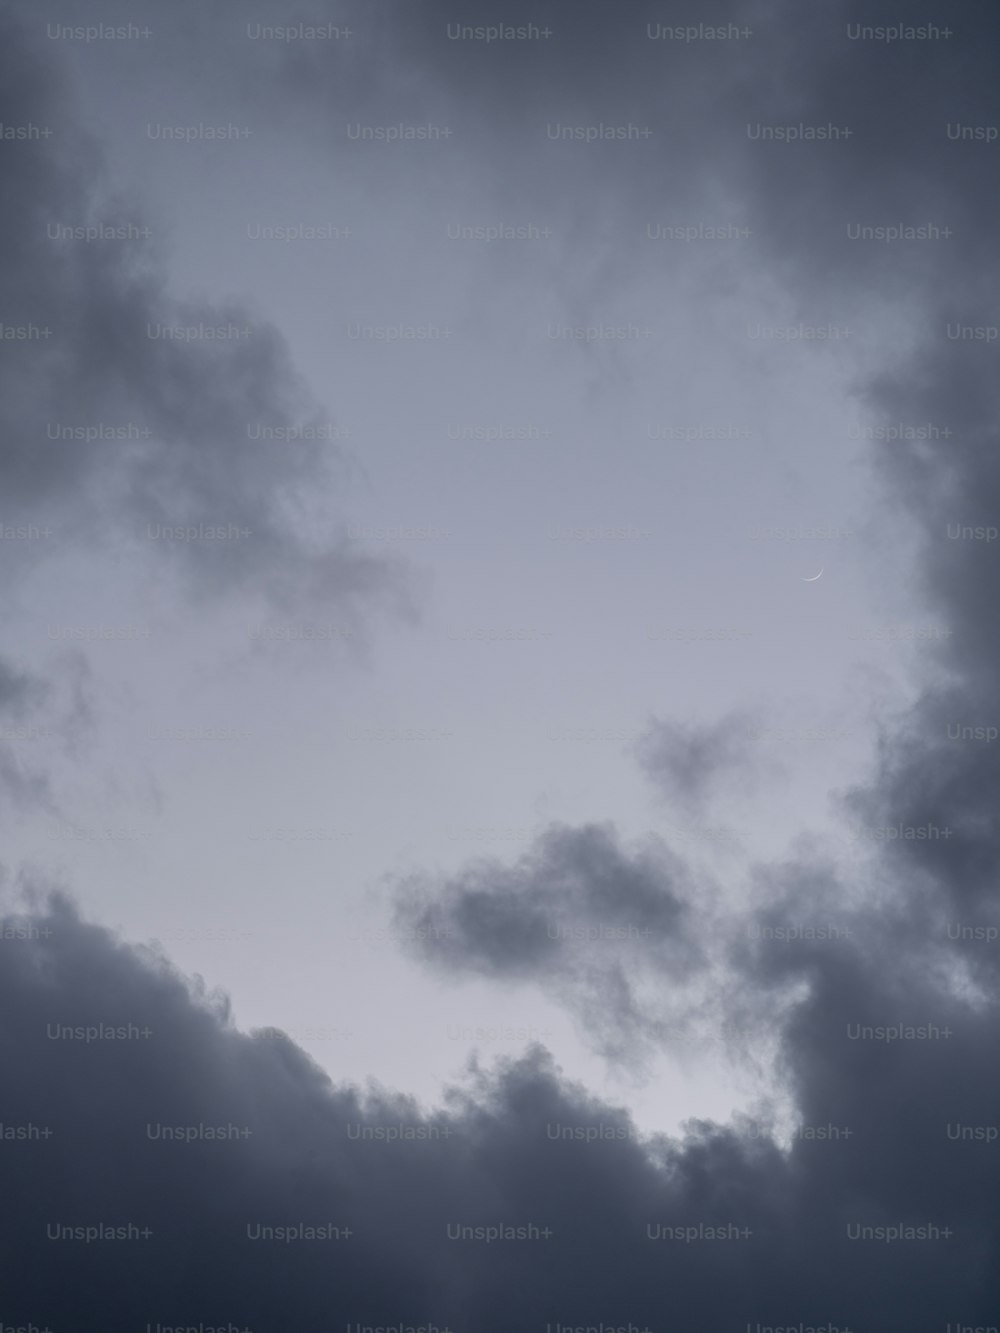 Un avion volant dans un ciel nuageux par temps nuageux